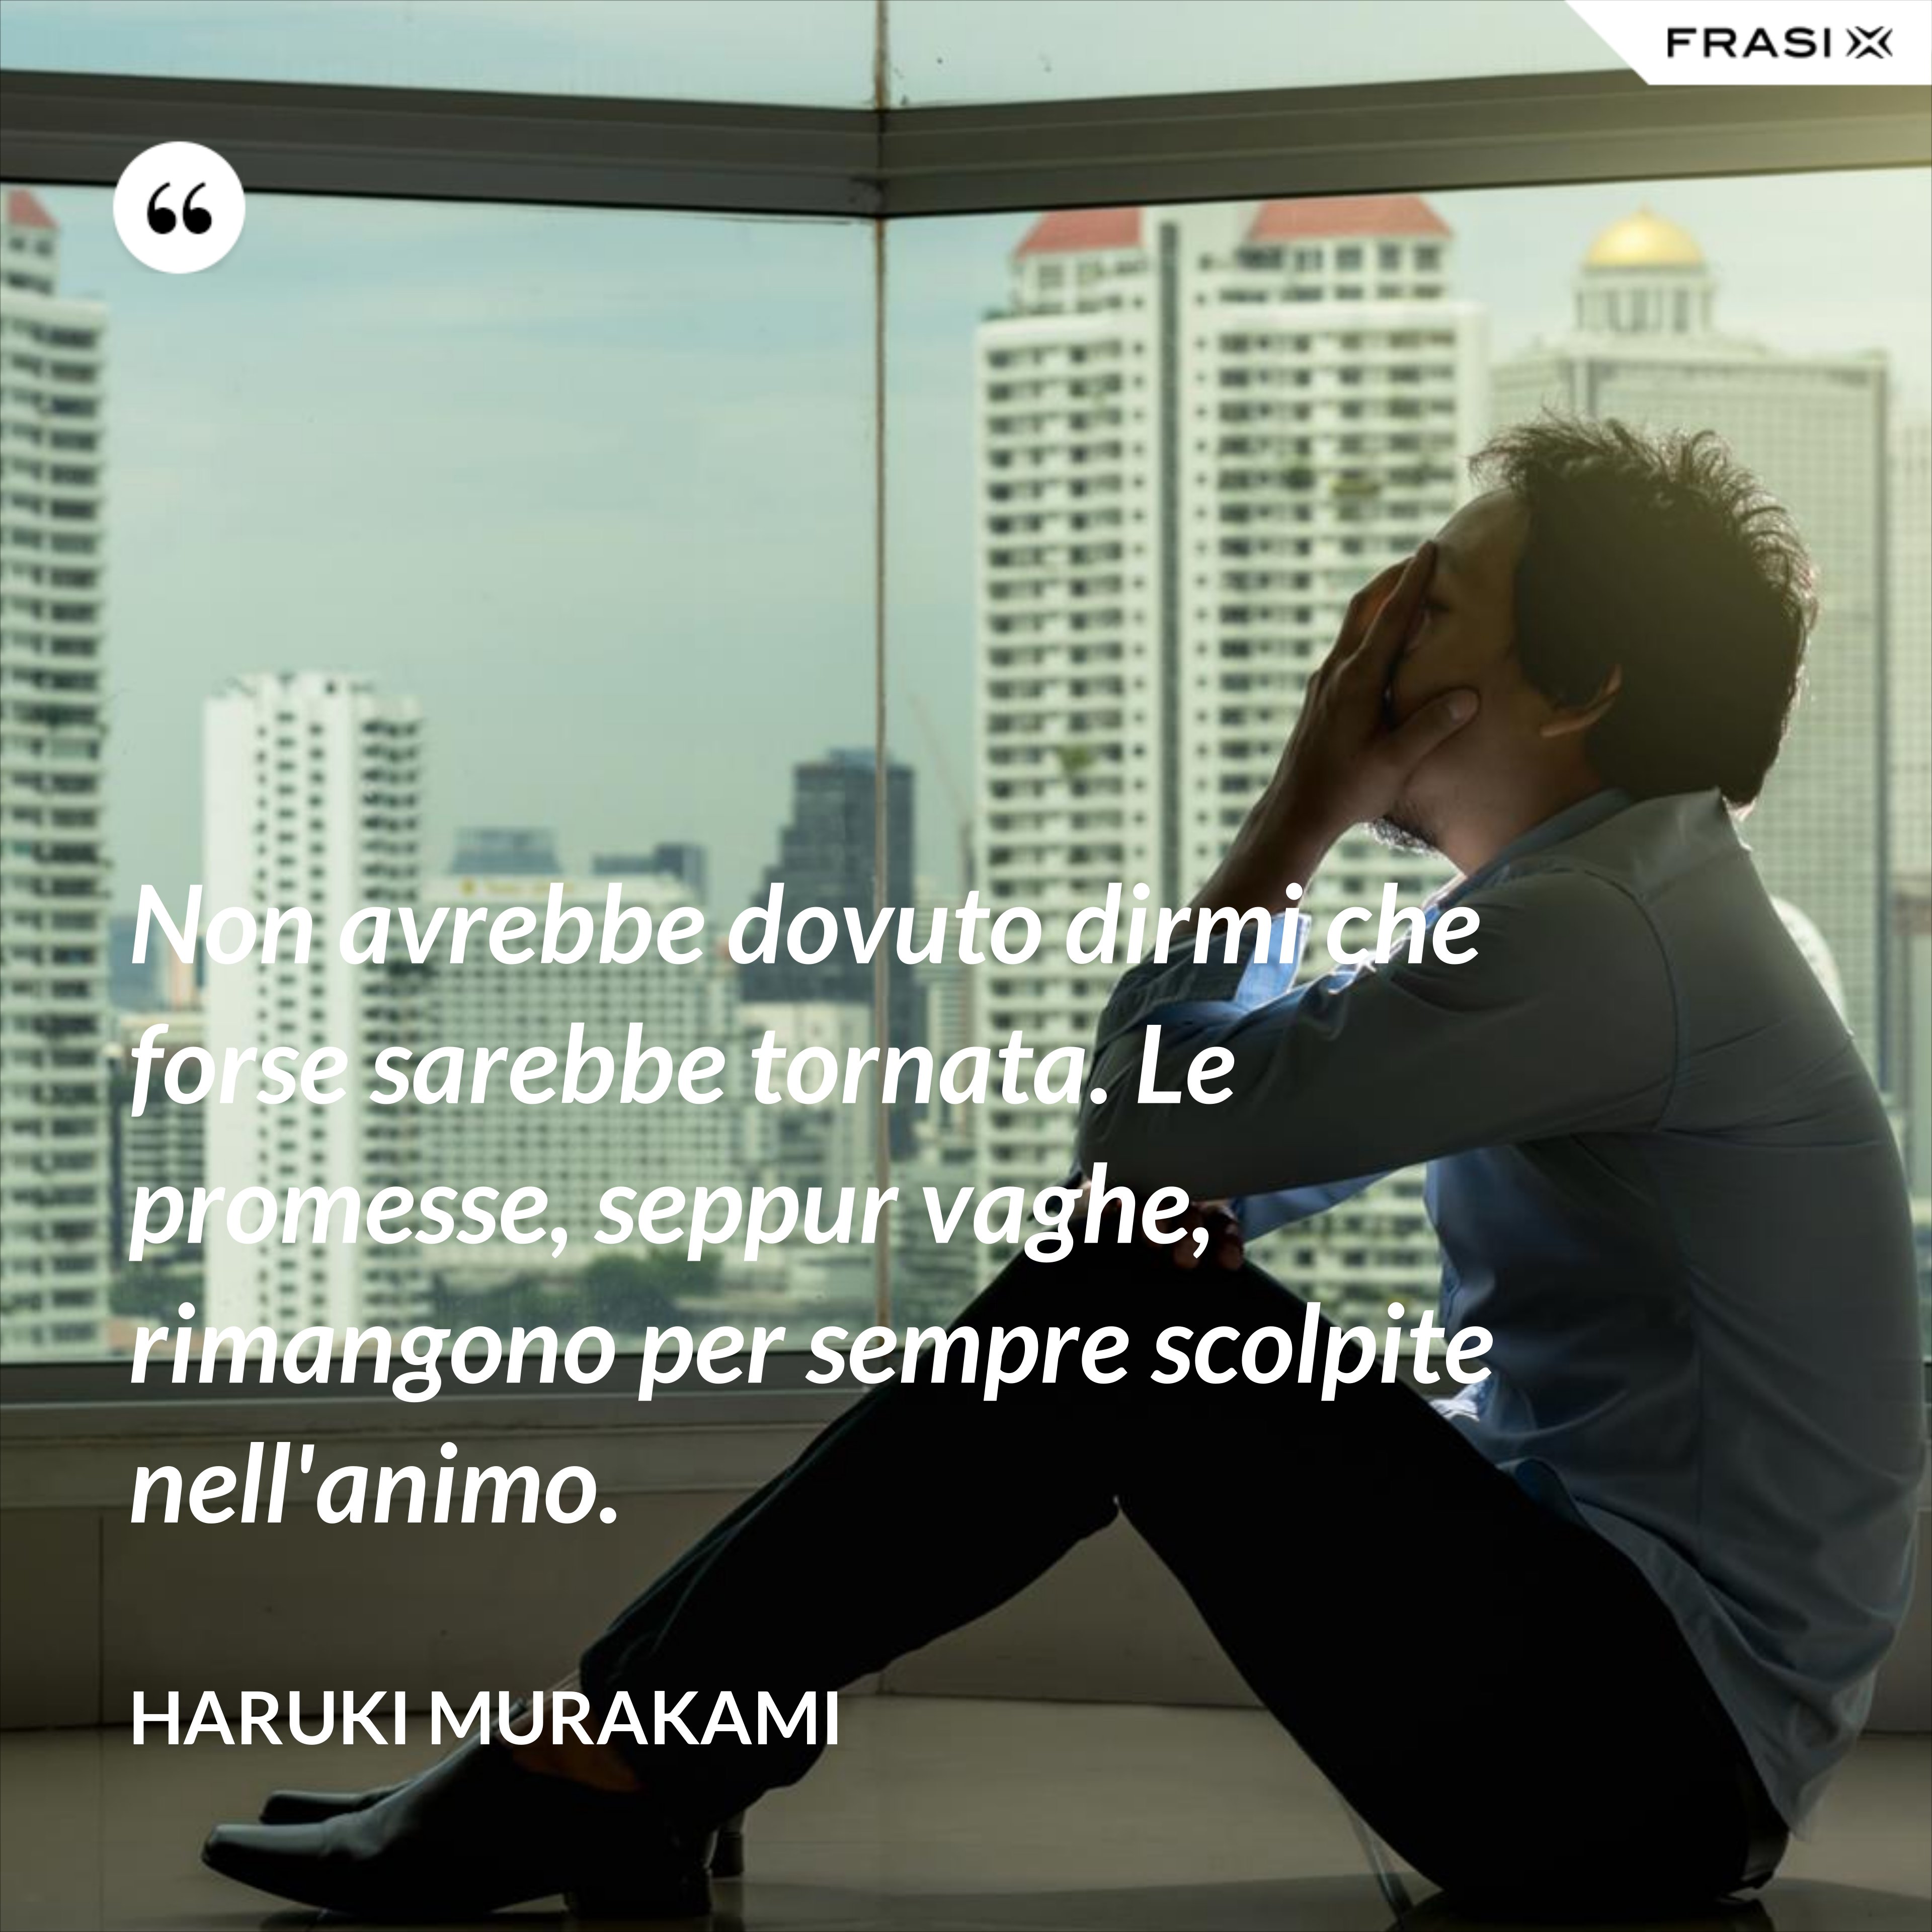 Non avrebbe dovuto dirmi che forse sarebbe tornata. Le promesse, seppur vaghe, rimangono per sempre scolpite nell'animo. - Haruki Murakami